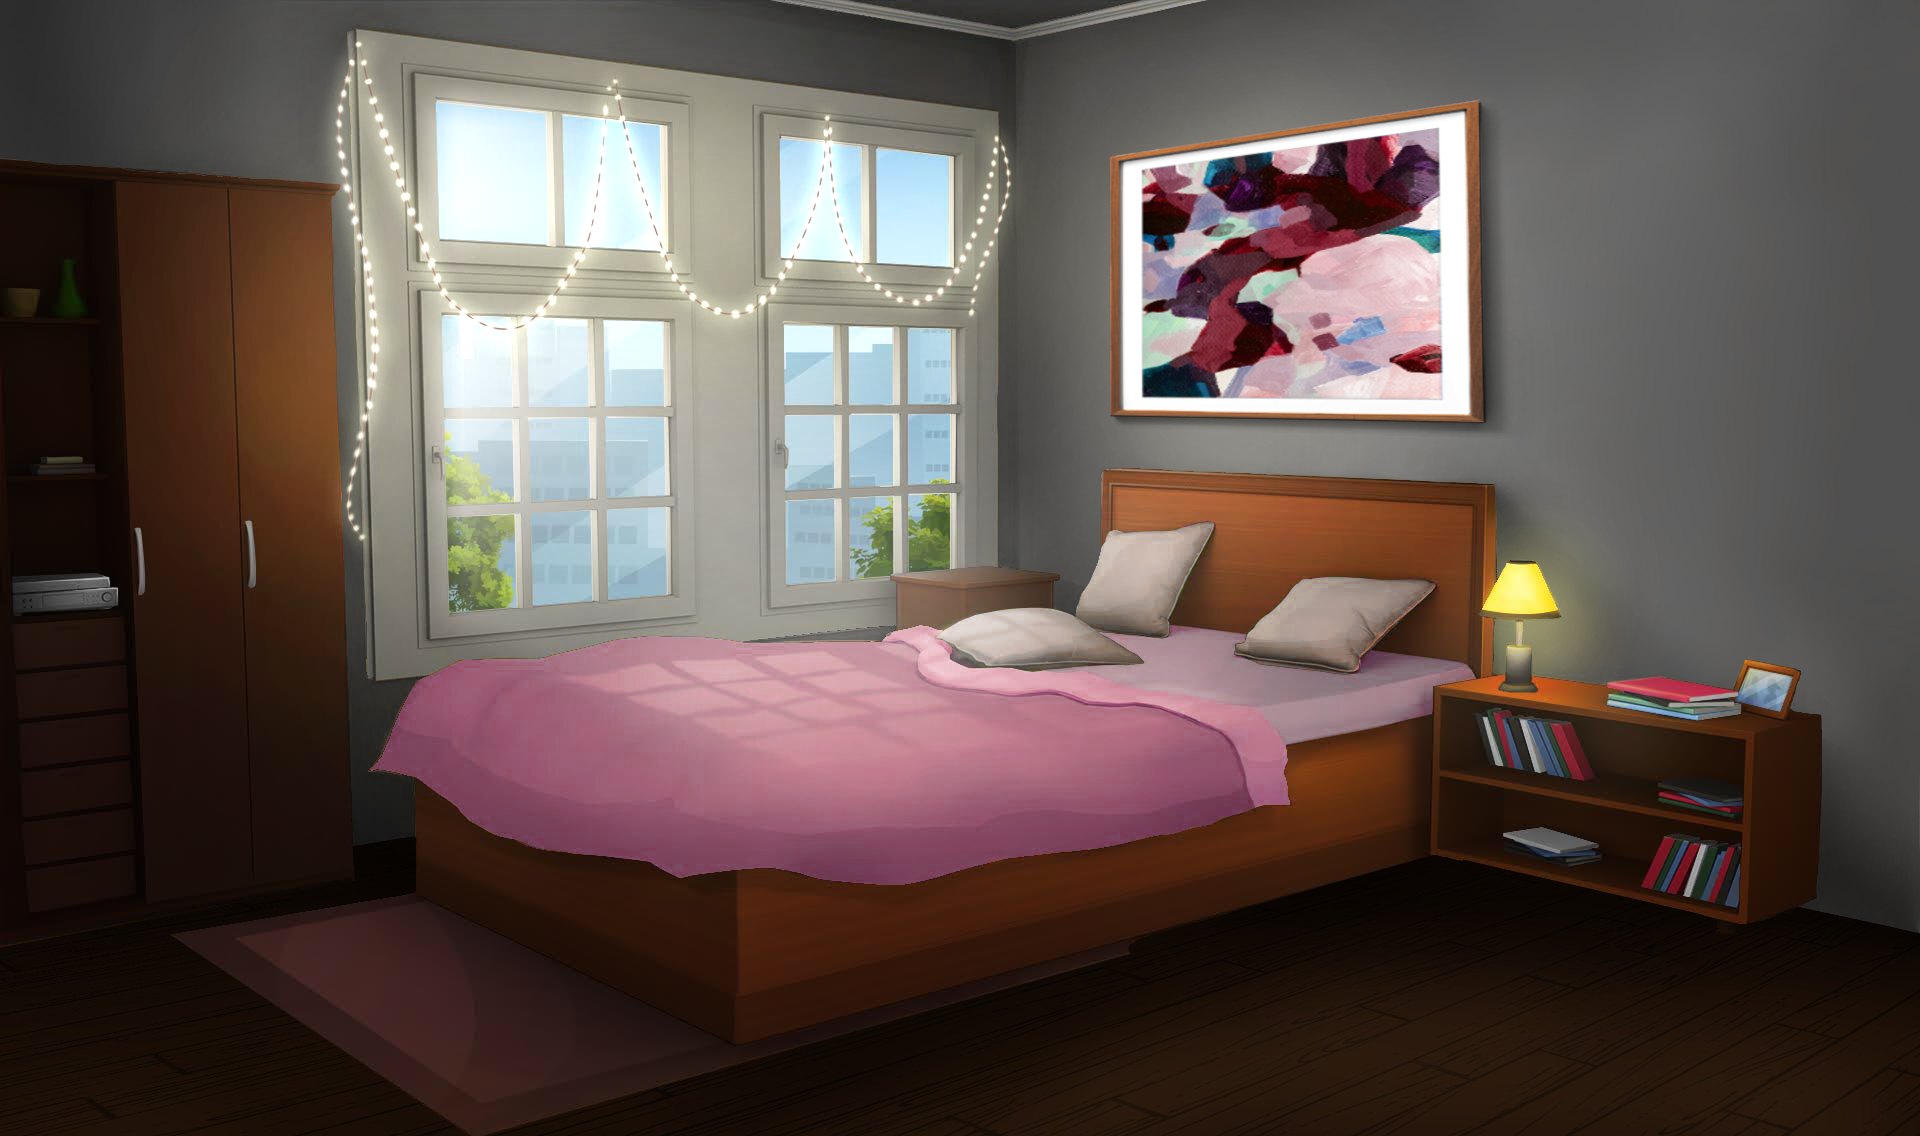 Anime bedroom desktop wallpaper: Tạo không gian làm việc đẹp mắt cùng với hình nền phòng ngủ Anime trên màn hình Desktop. Nó sẽ thay đổi cảm giác của bạn khi làm việc để trở nên thoải mái và giúp bạn tập trung hơn vào công việc của mình.